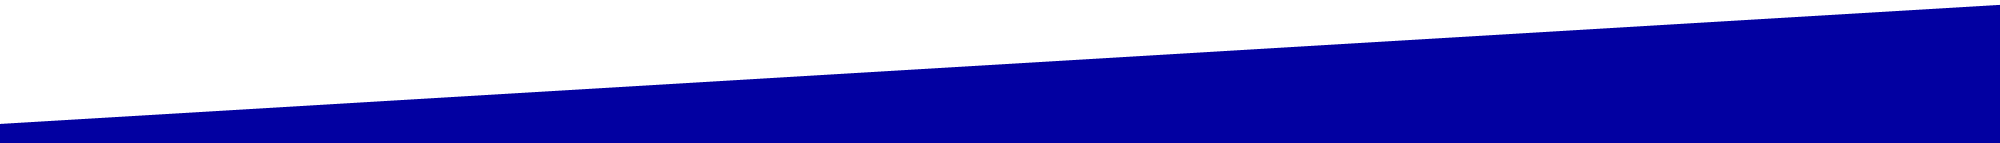 Hilmar Krüger GmbH & Co. KG in Salzwedel, schräger blauer Balken als Hintergrundbild im Footer